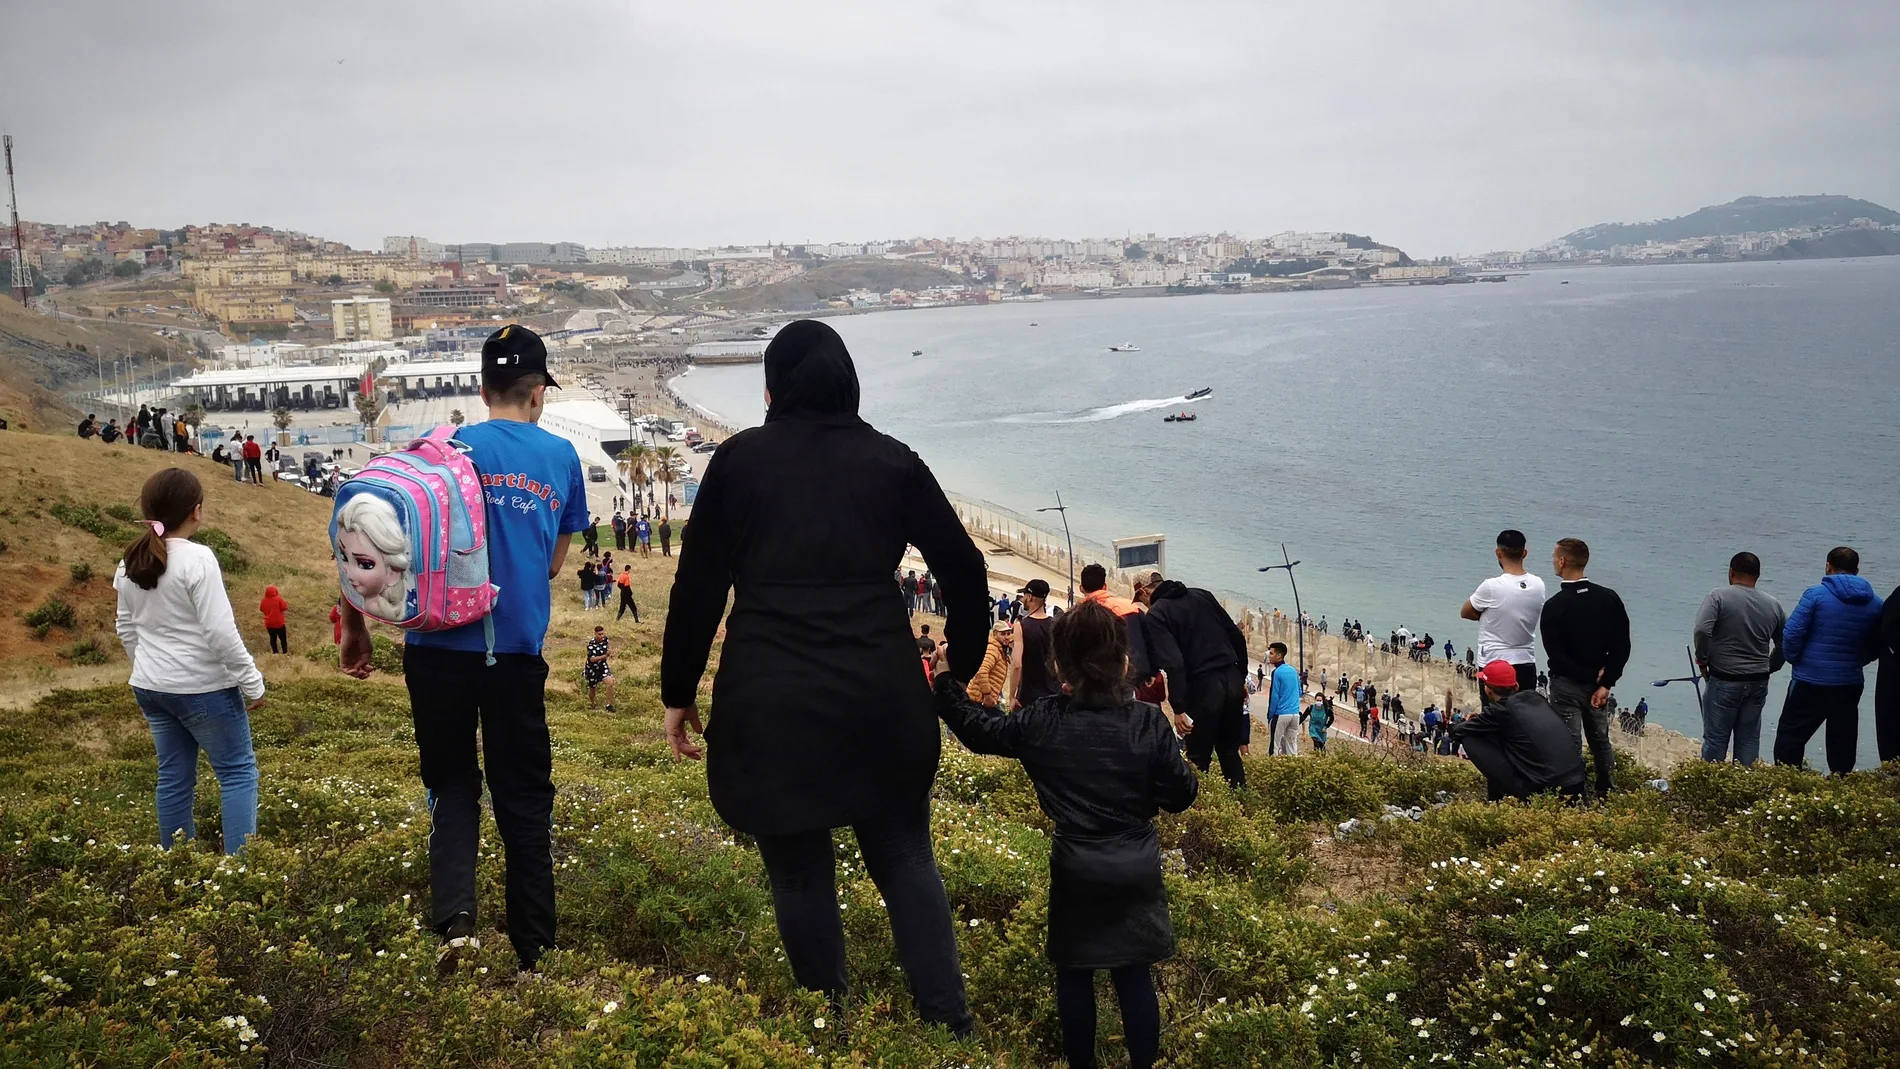 Miles de personas intentaron cruzar hacia Ceuta, en una avalancha de inmigrantes sin precedentes en España al registrarse la entrada en 24 horas de 5.000 personas (un tercio de ellas menores